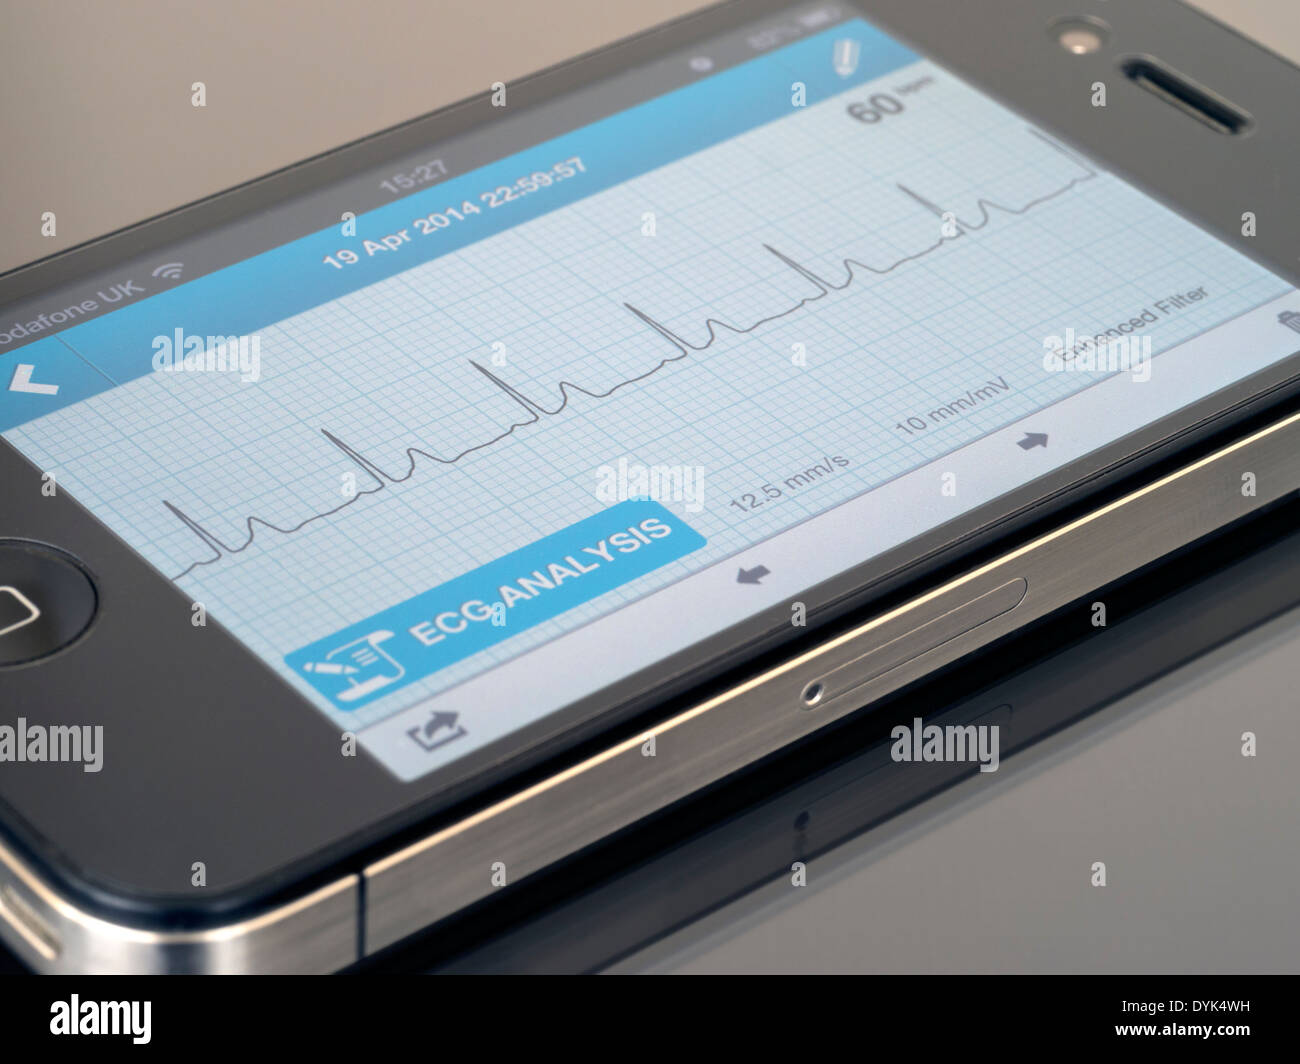 ECG portatile EKG Cardiofrequenzimetro App in esecuzione su iPhone 4 che mostra sinusale normale ritmo cardiaco traccia. Foto Stock